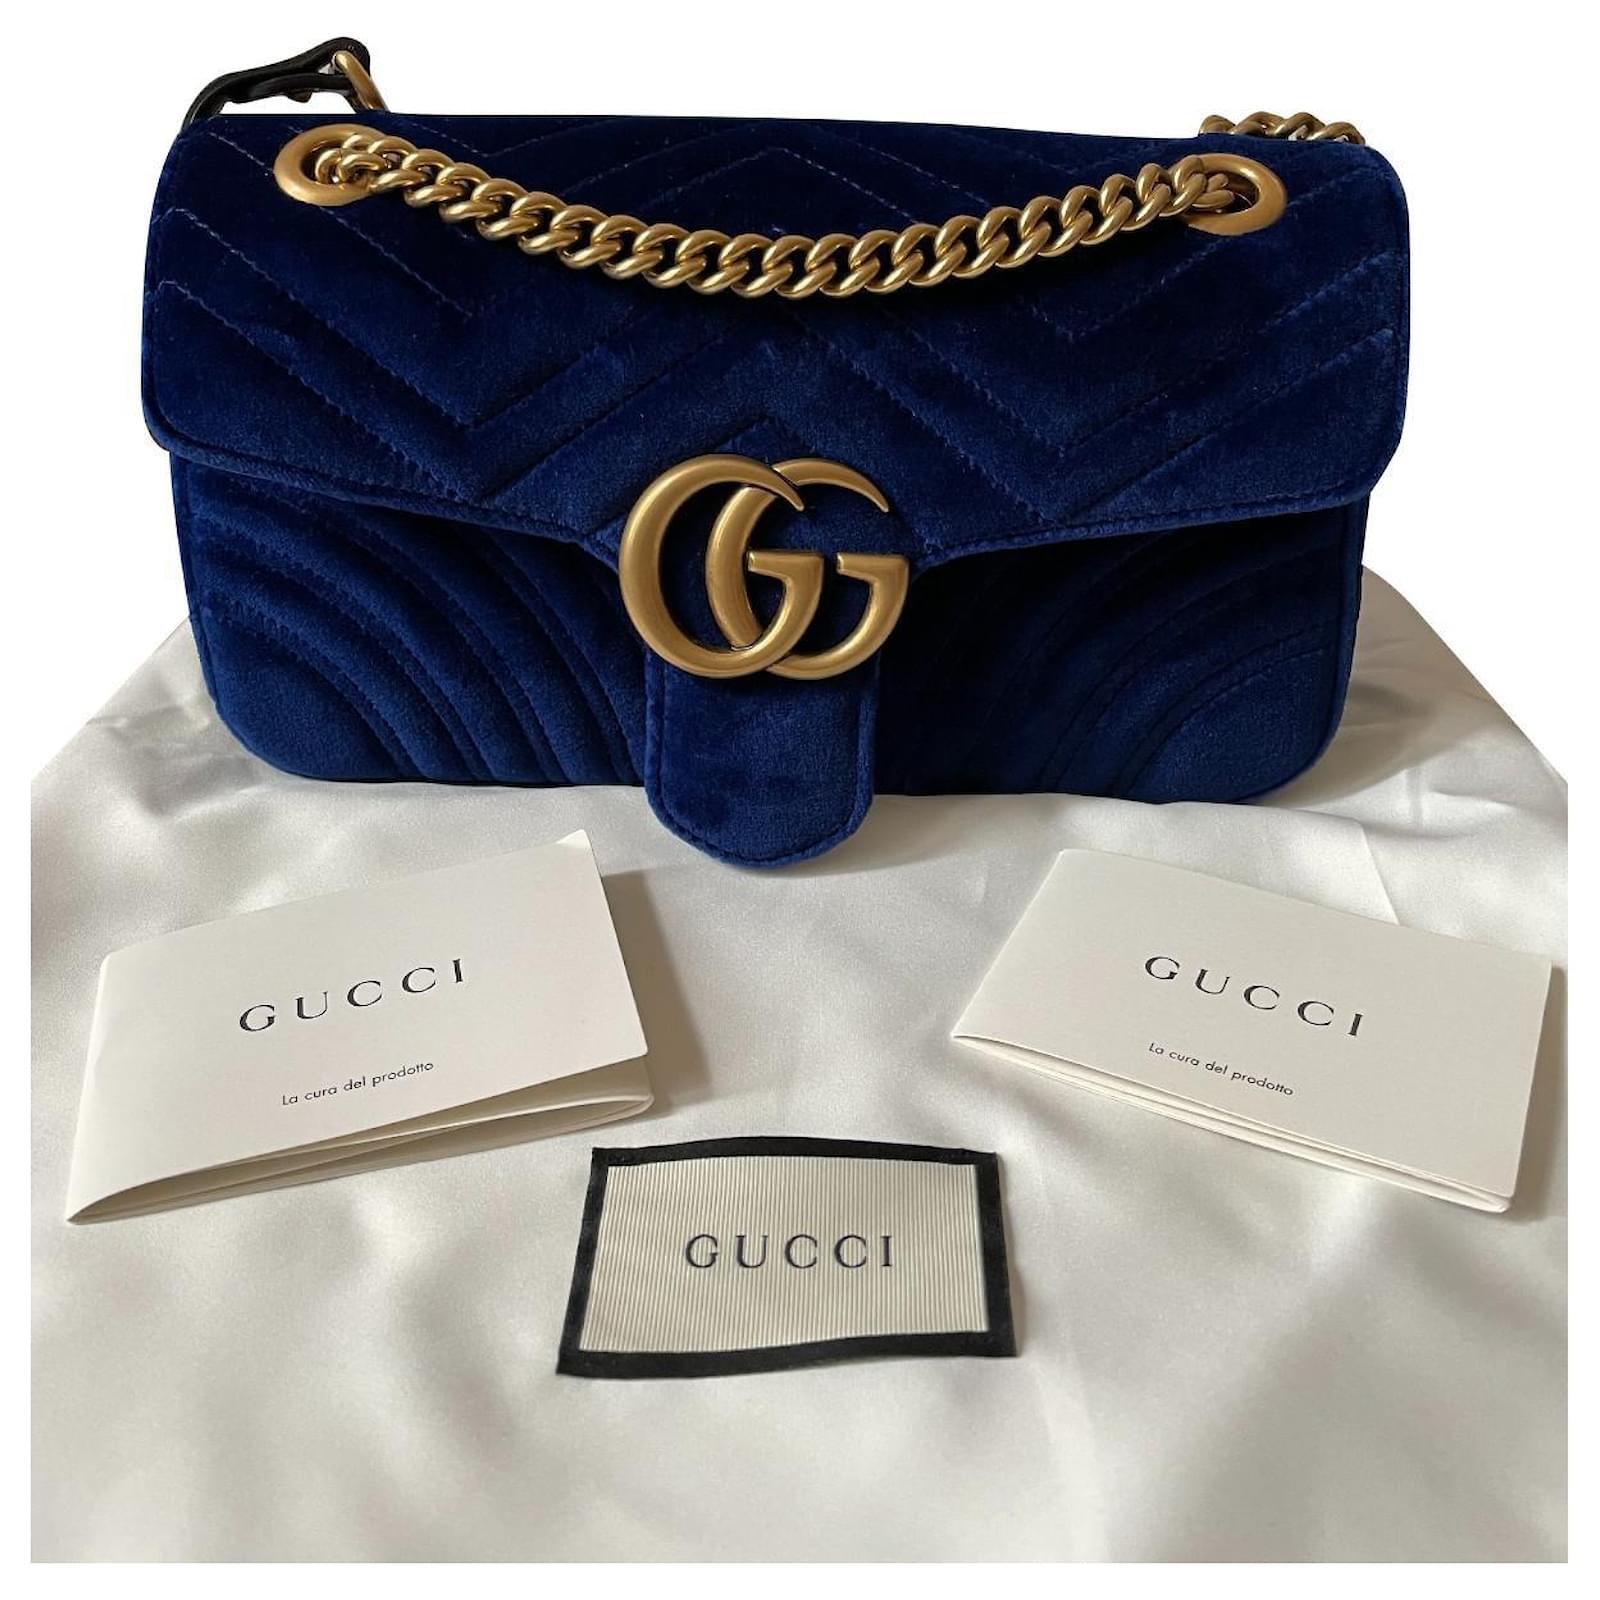 Sac Gucci Marmont bleu – Closet2Closet.Paris